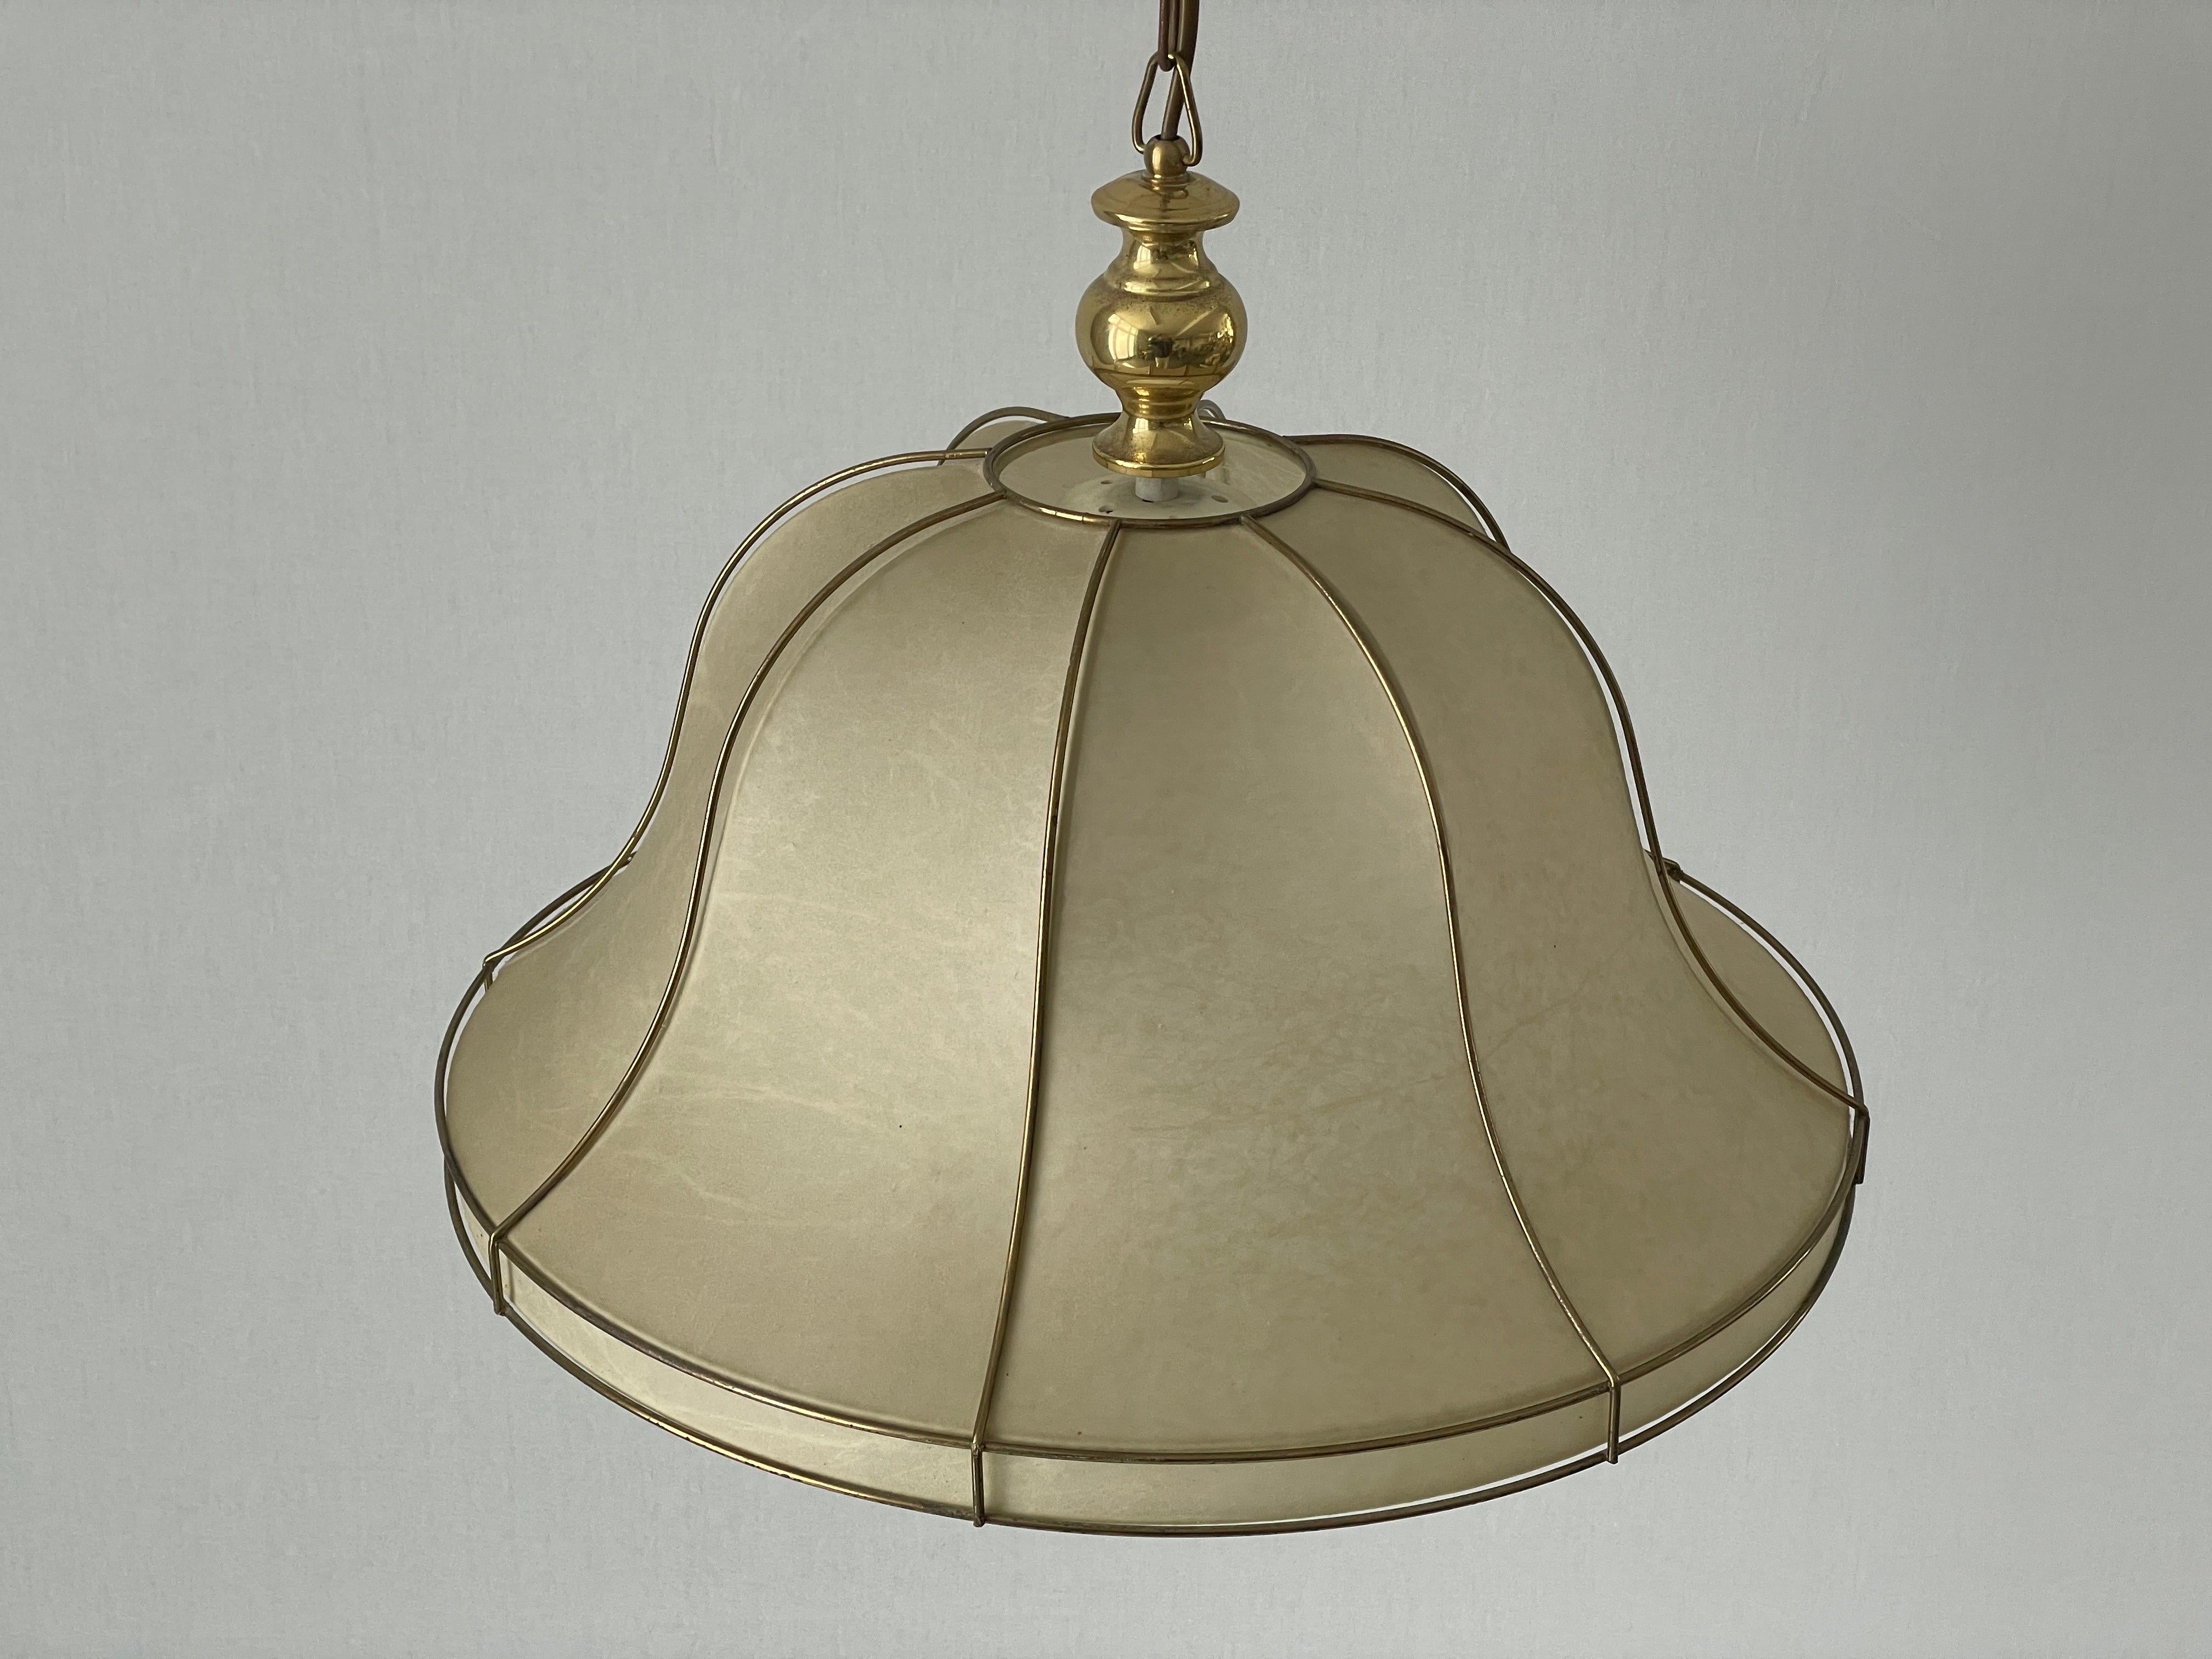 Lampe suspendue cocon avec cadre en métal doré par Goldkant, années 1960, Allemagne

L'abat-jour est en très bon état vintage.

Cette lampe fonctionne avec des ampoules E27. 
Câblé et adapté à une utilisation avec 220V et 110V pour tous les